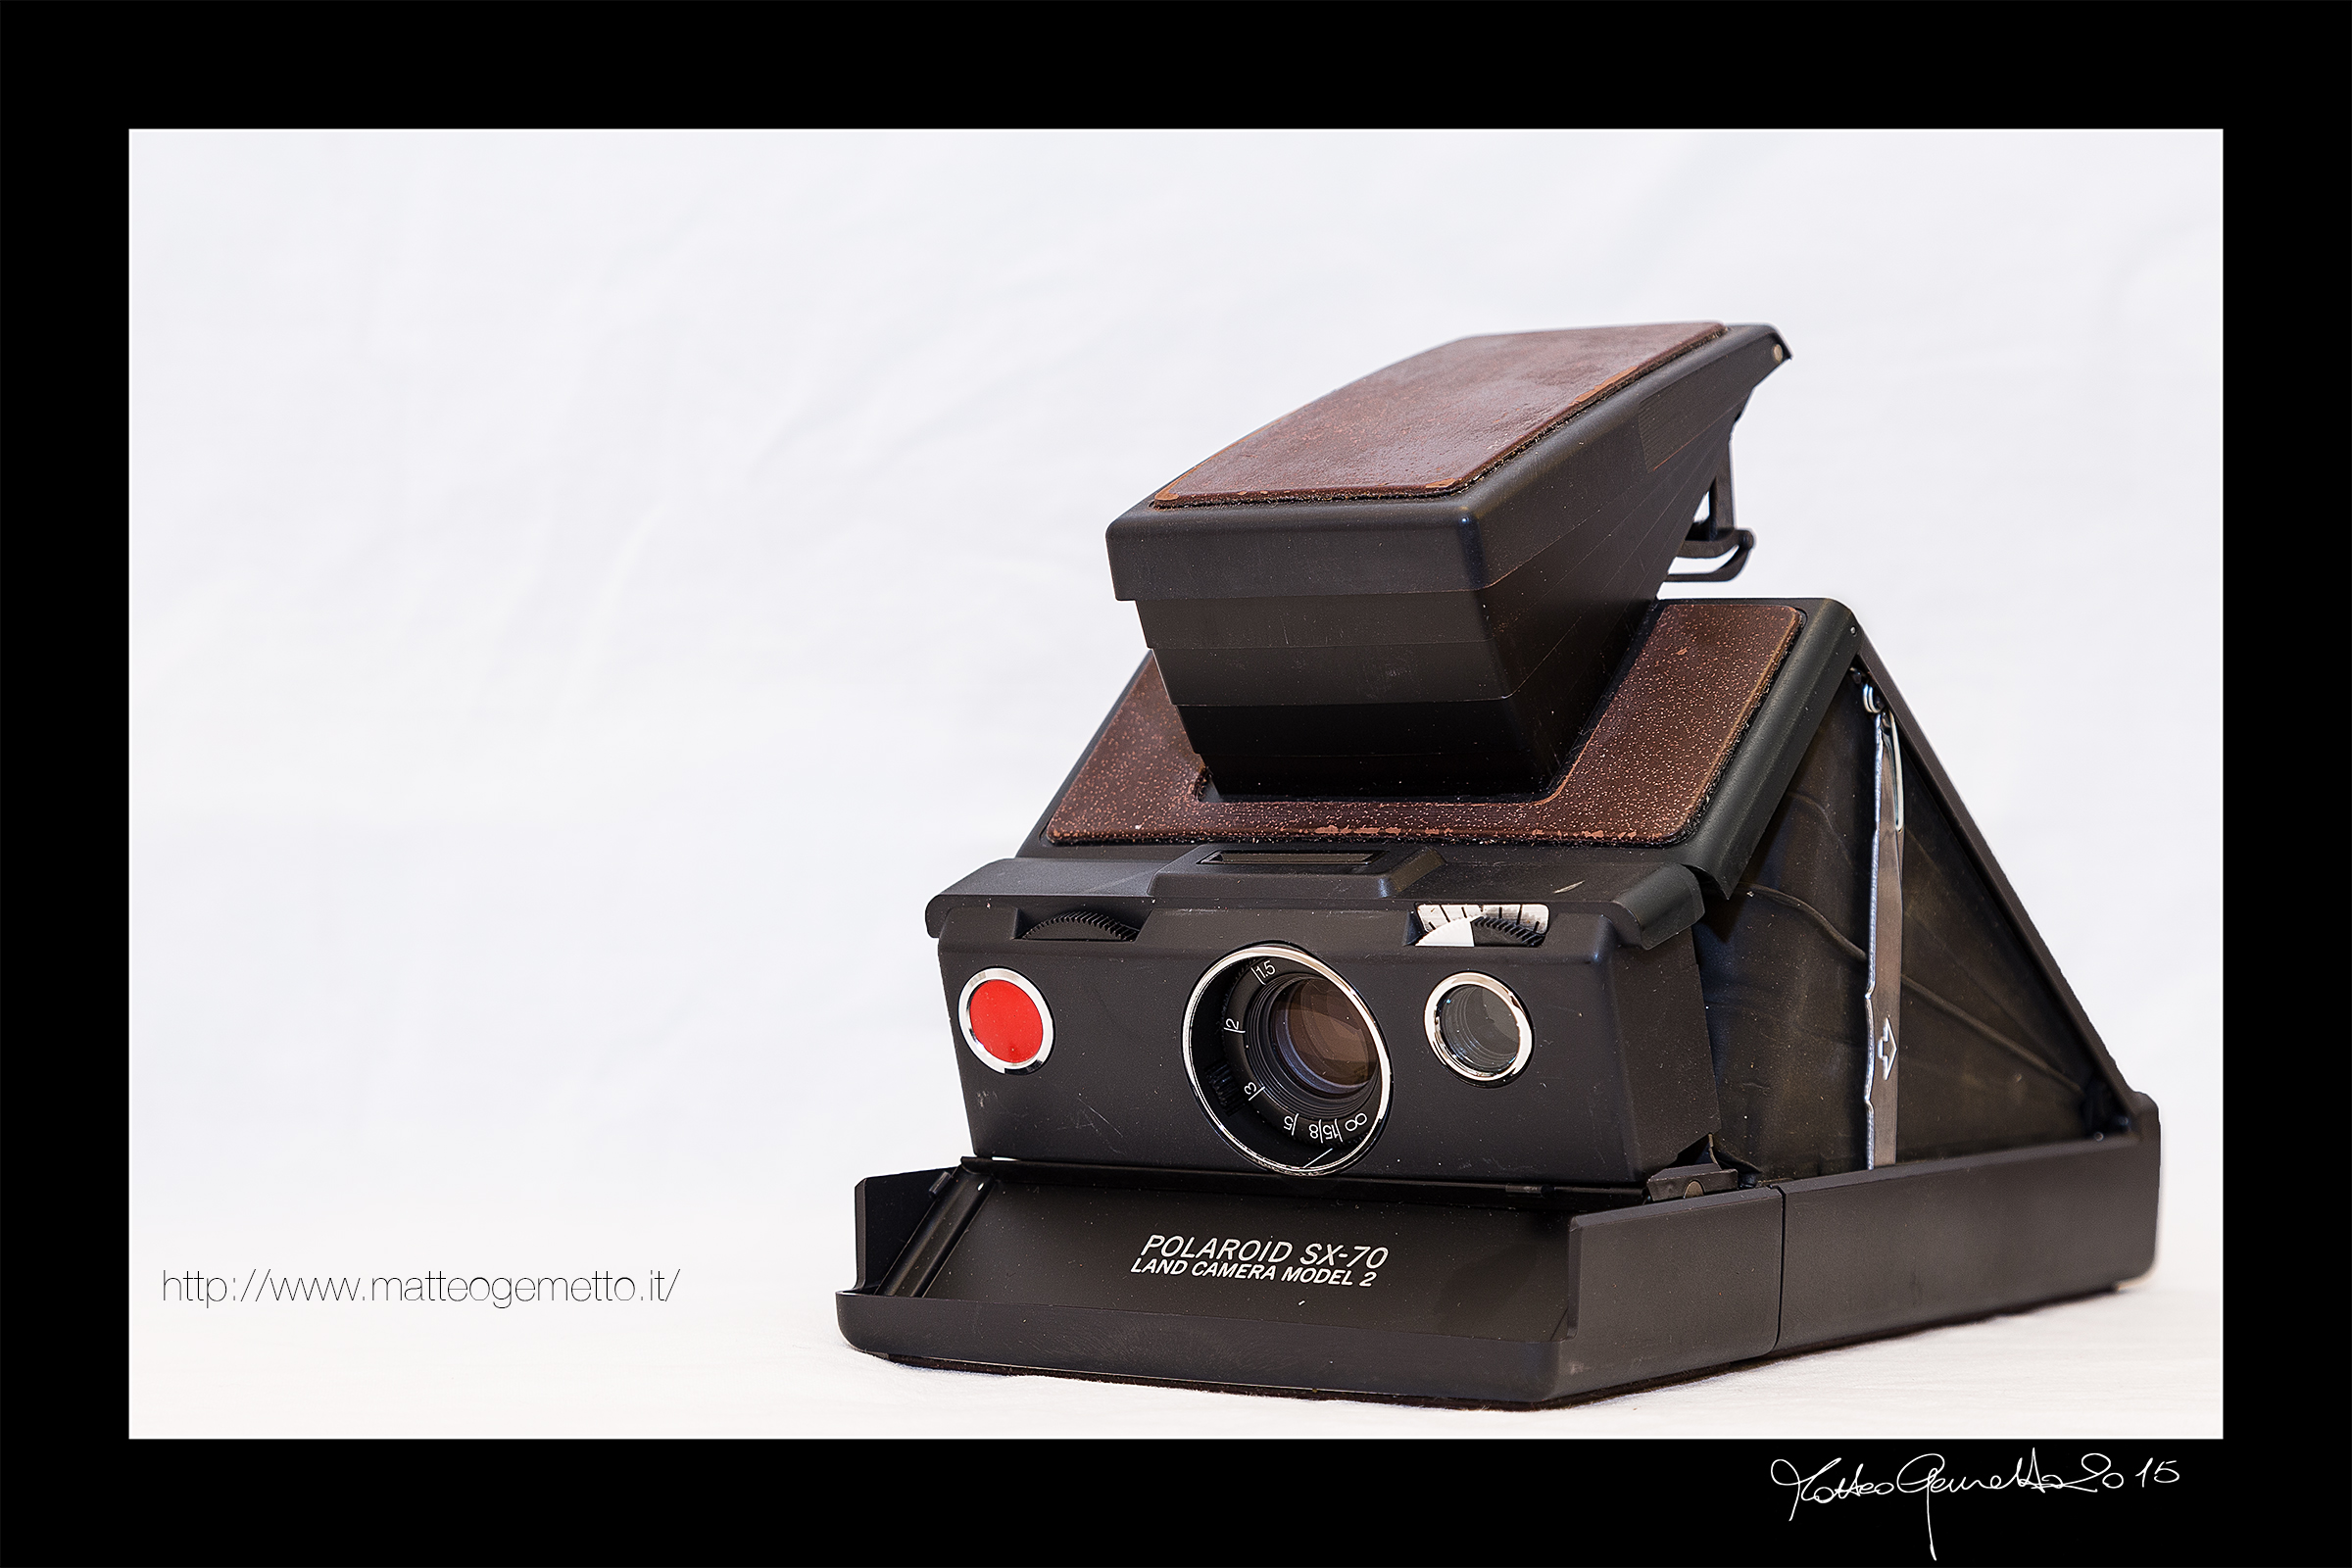 Polaroid SX-70 model 2...